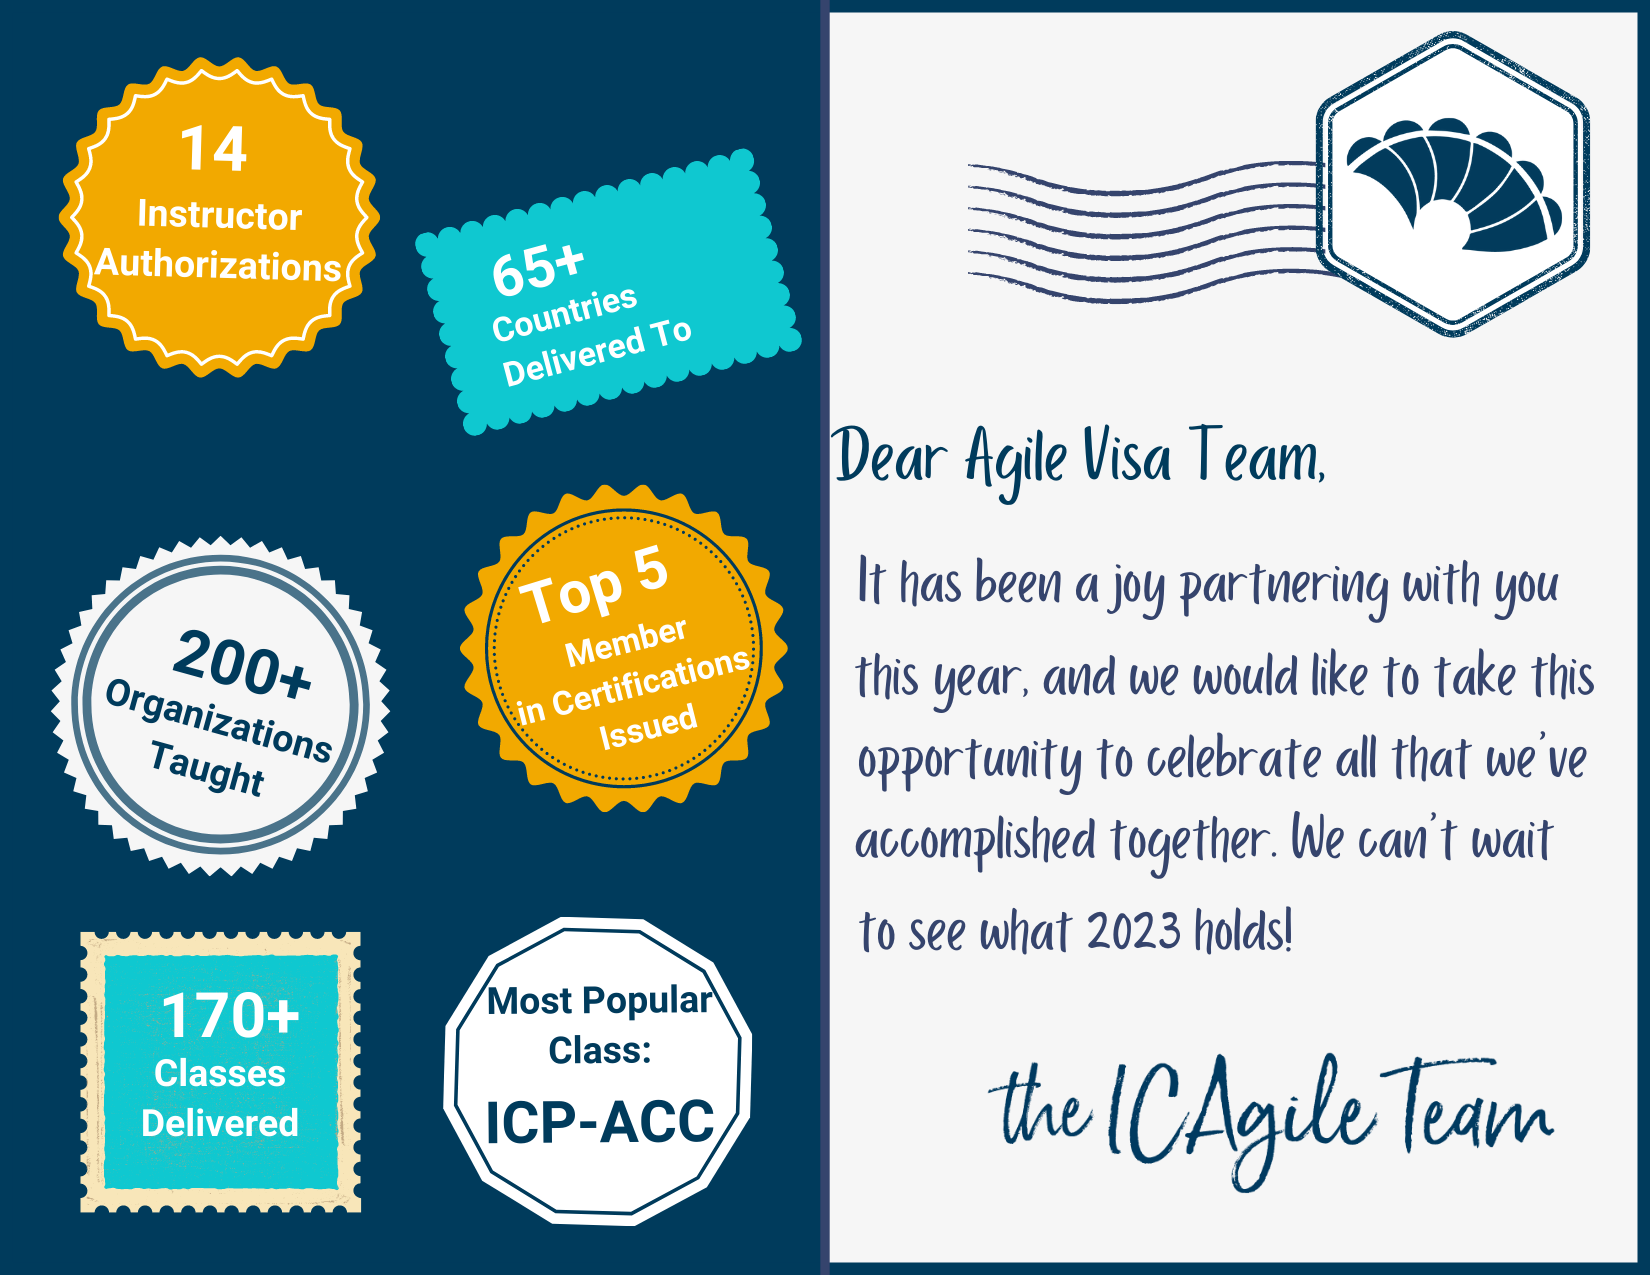 Agile Visa Postcard by ICAgile